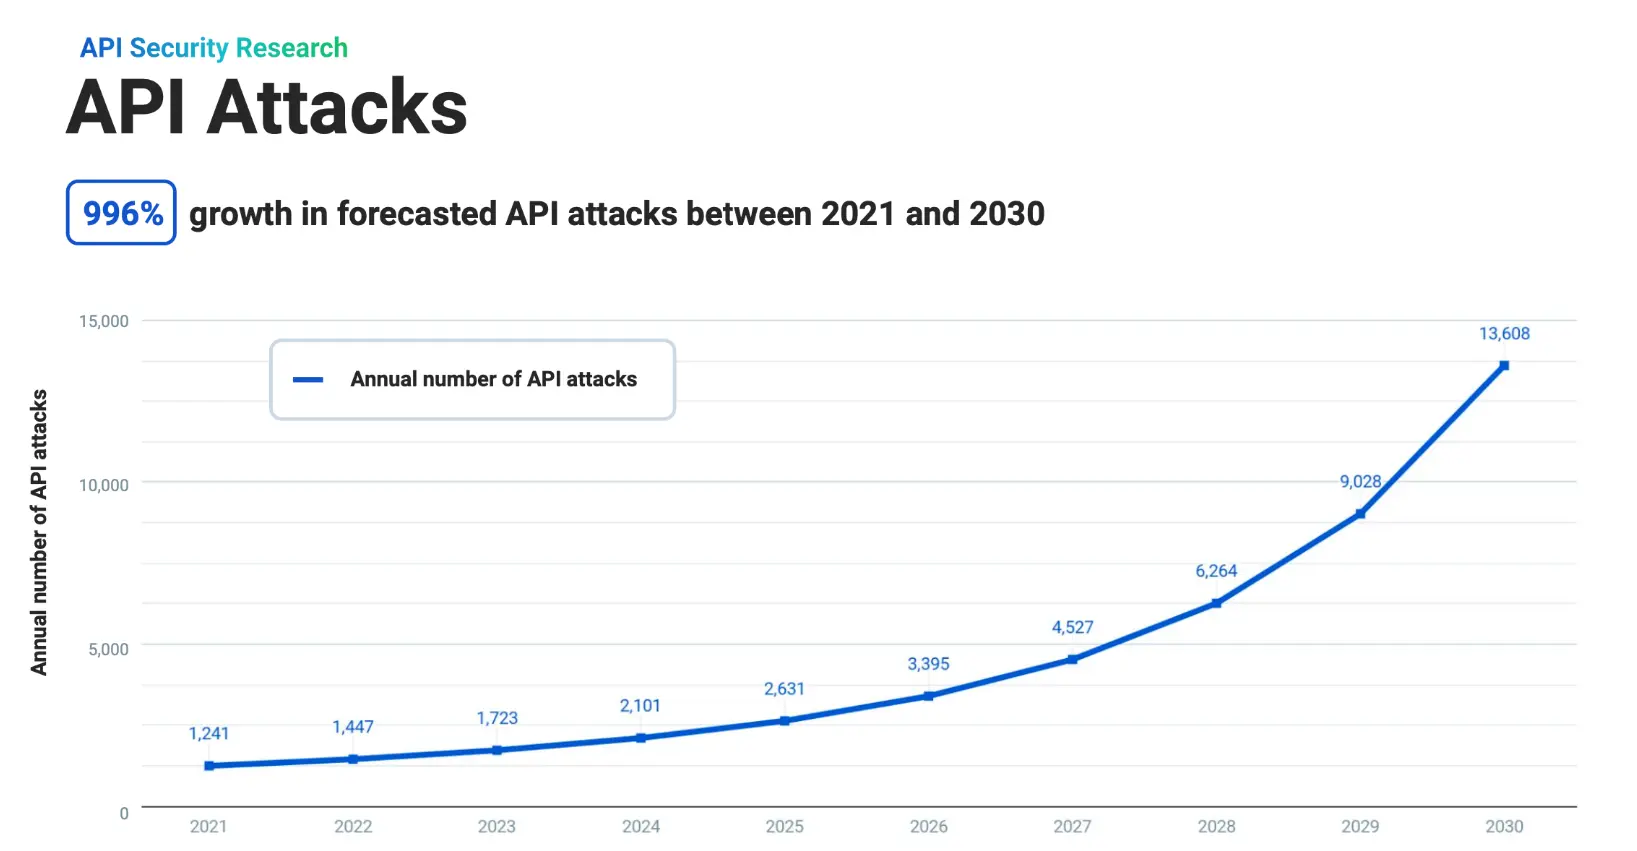 到 2030 年API 攻击预计将激增近 1000%到 2030 年API 攻击预计将激增近 1000%